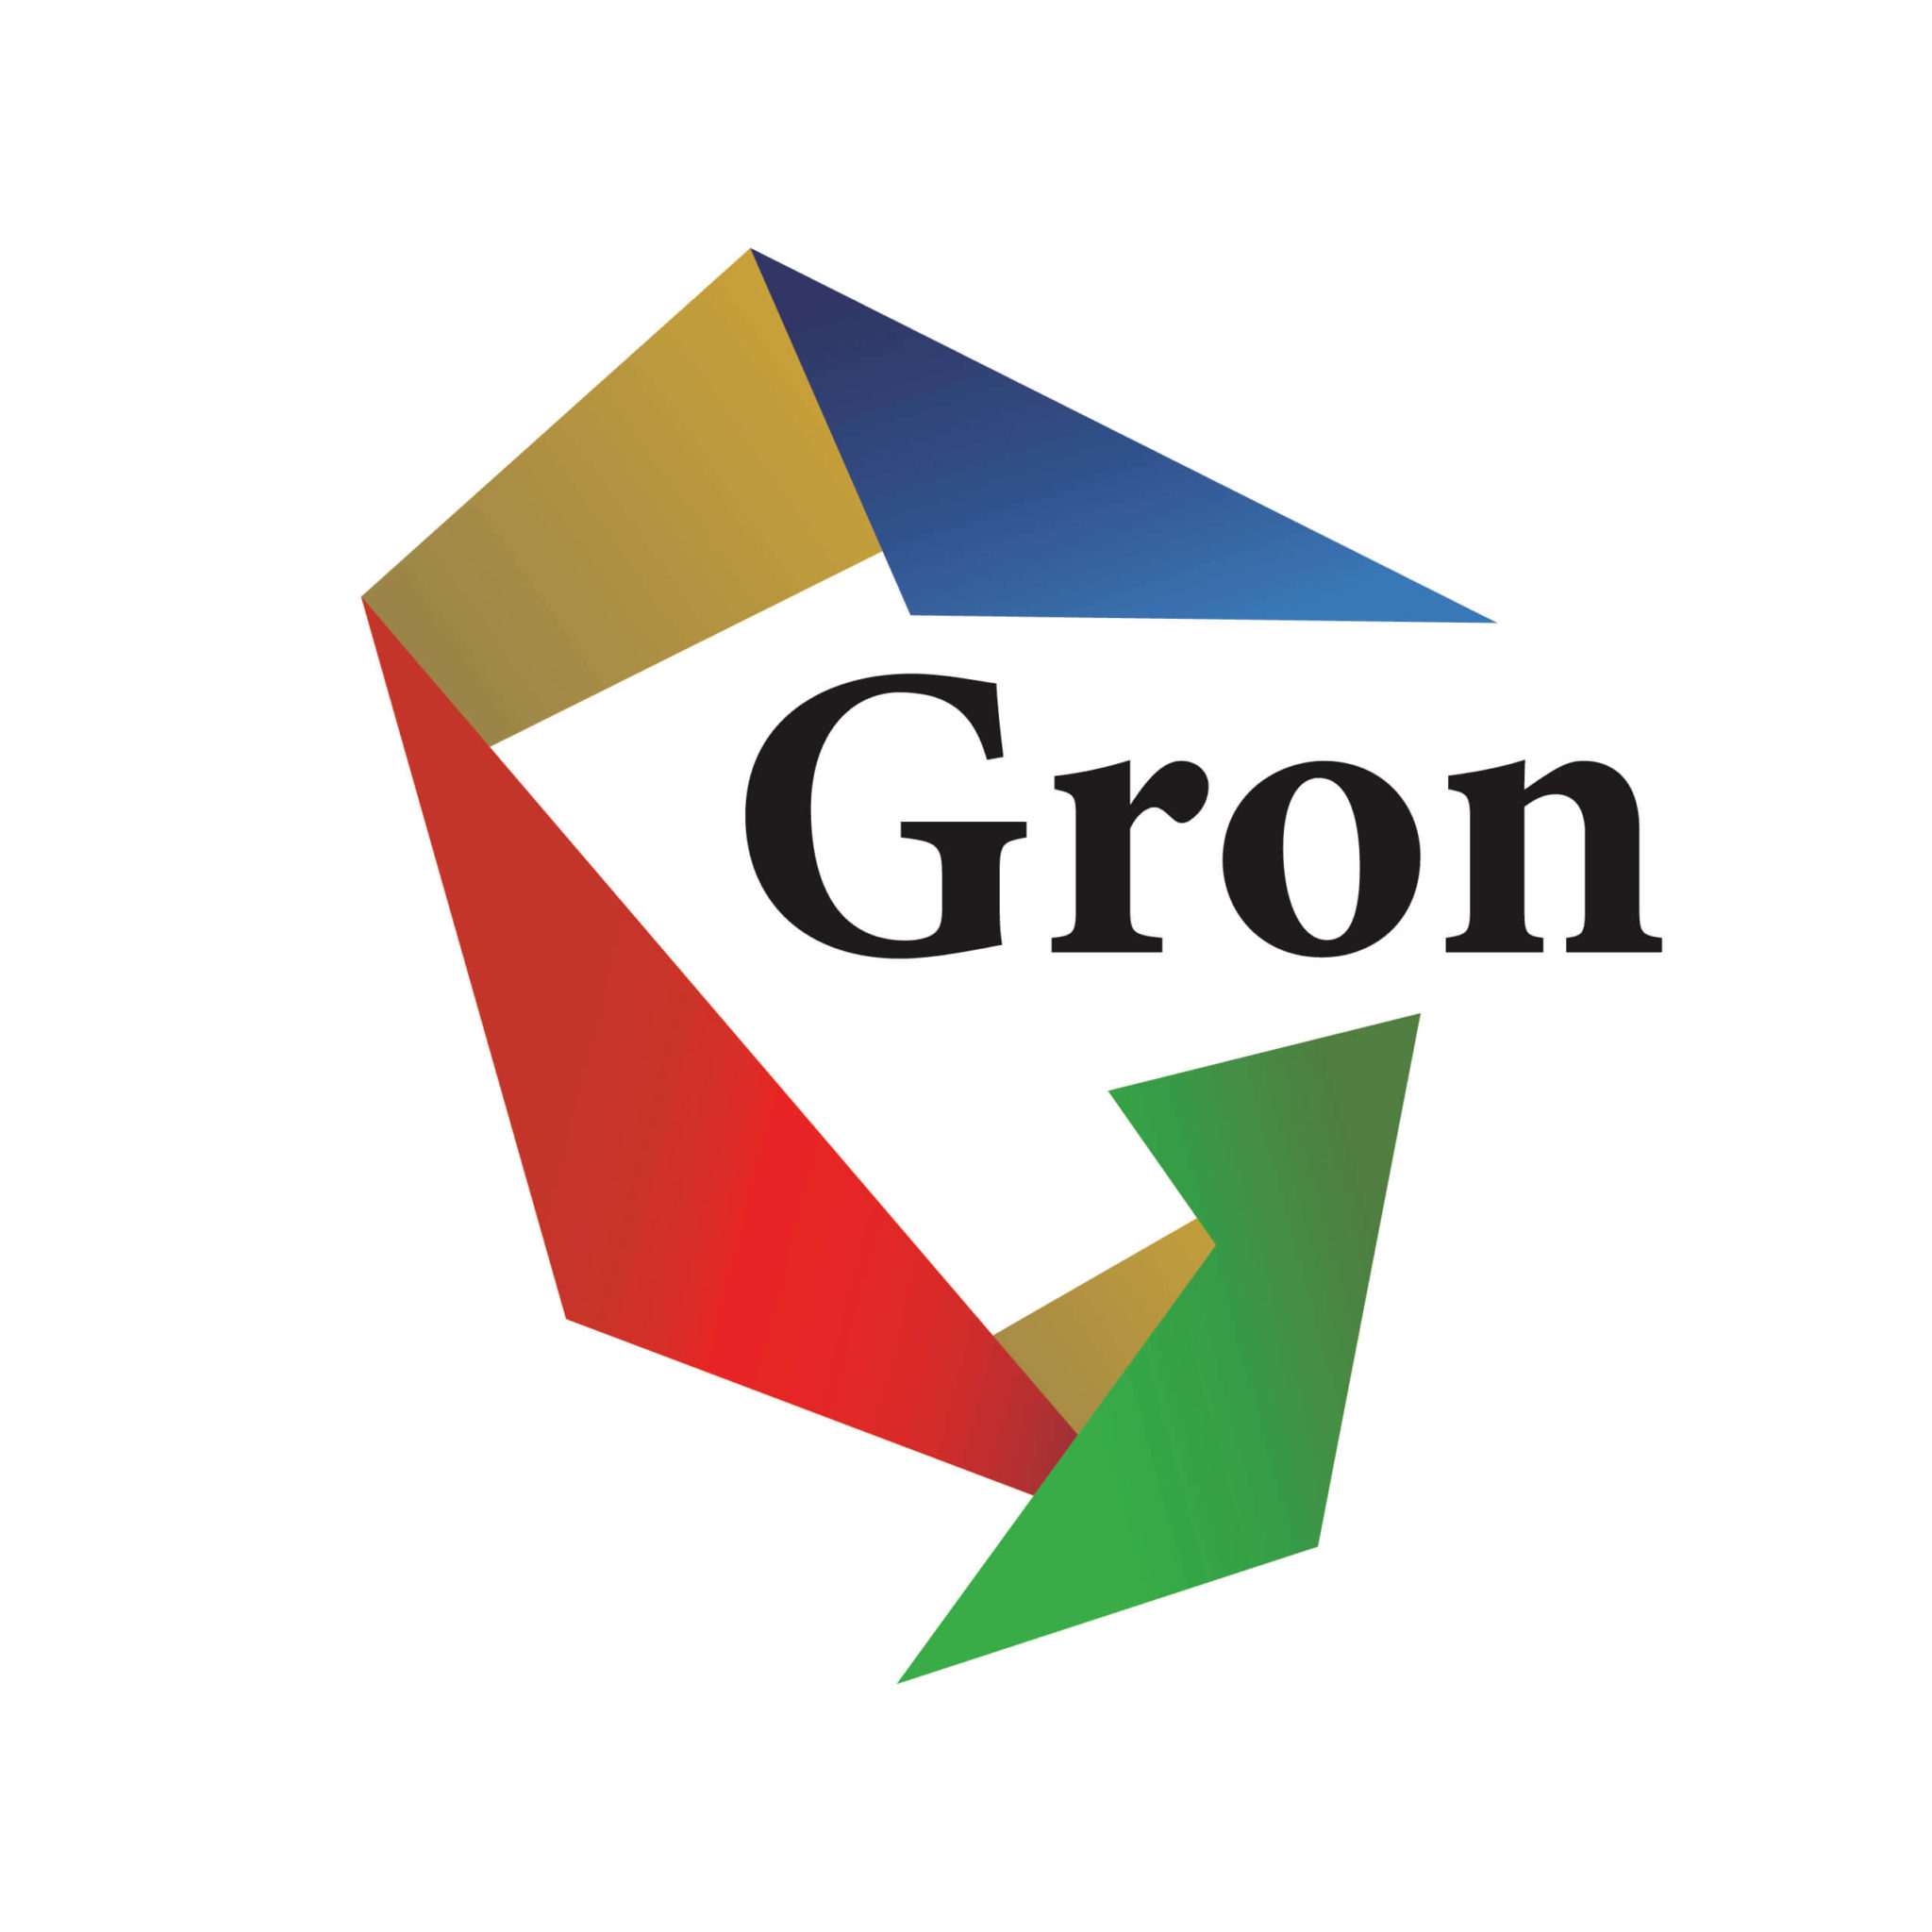 株式会社Gron